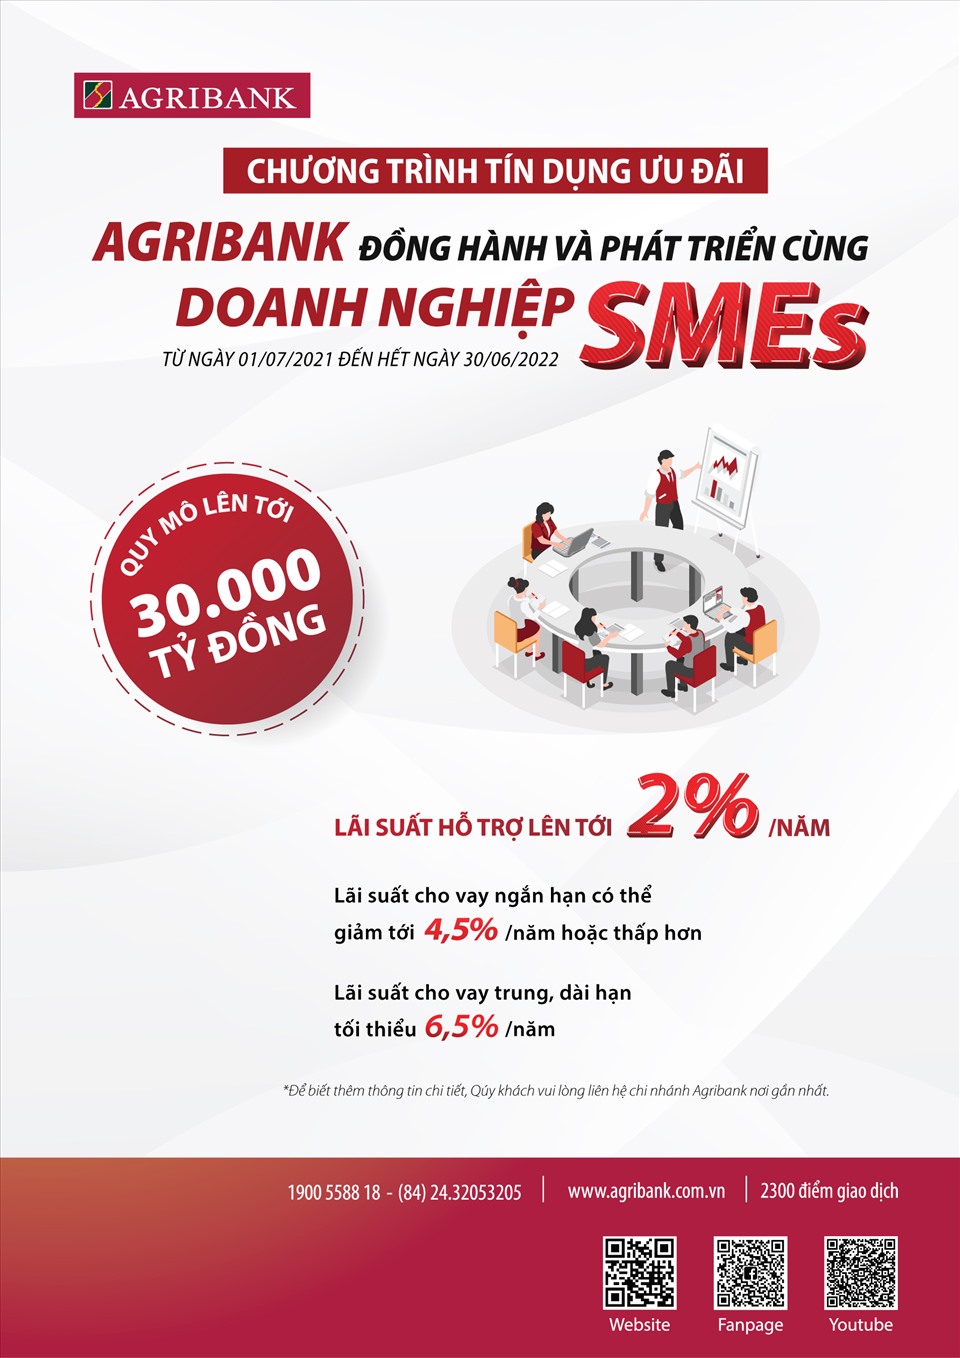 Doanh nghiệp SMEs có thể tiếp cận mức lãi suất cho vay ngắn hạn giảm tới 4,5%/năm hoặc thấp hơn để bổ sung vốn lưu động phục vụ phương án sản xuất kinh doanh. Ảnh: Agribank